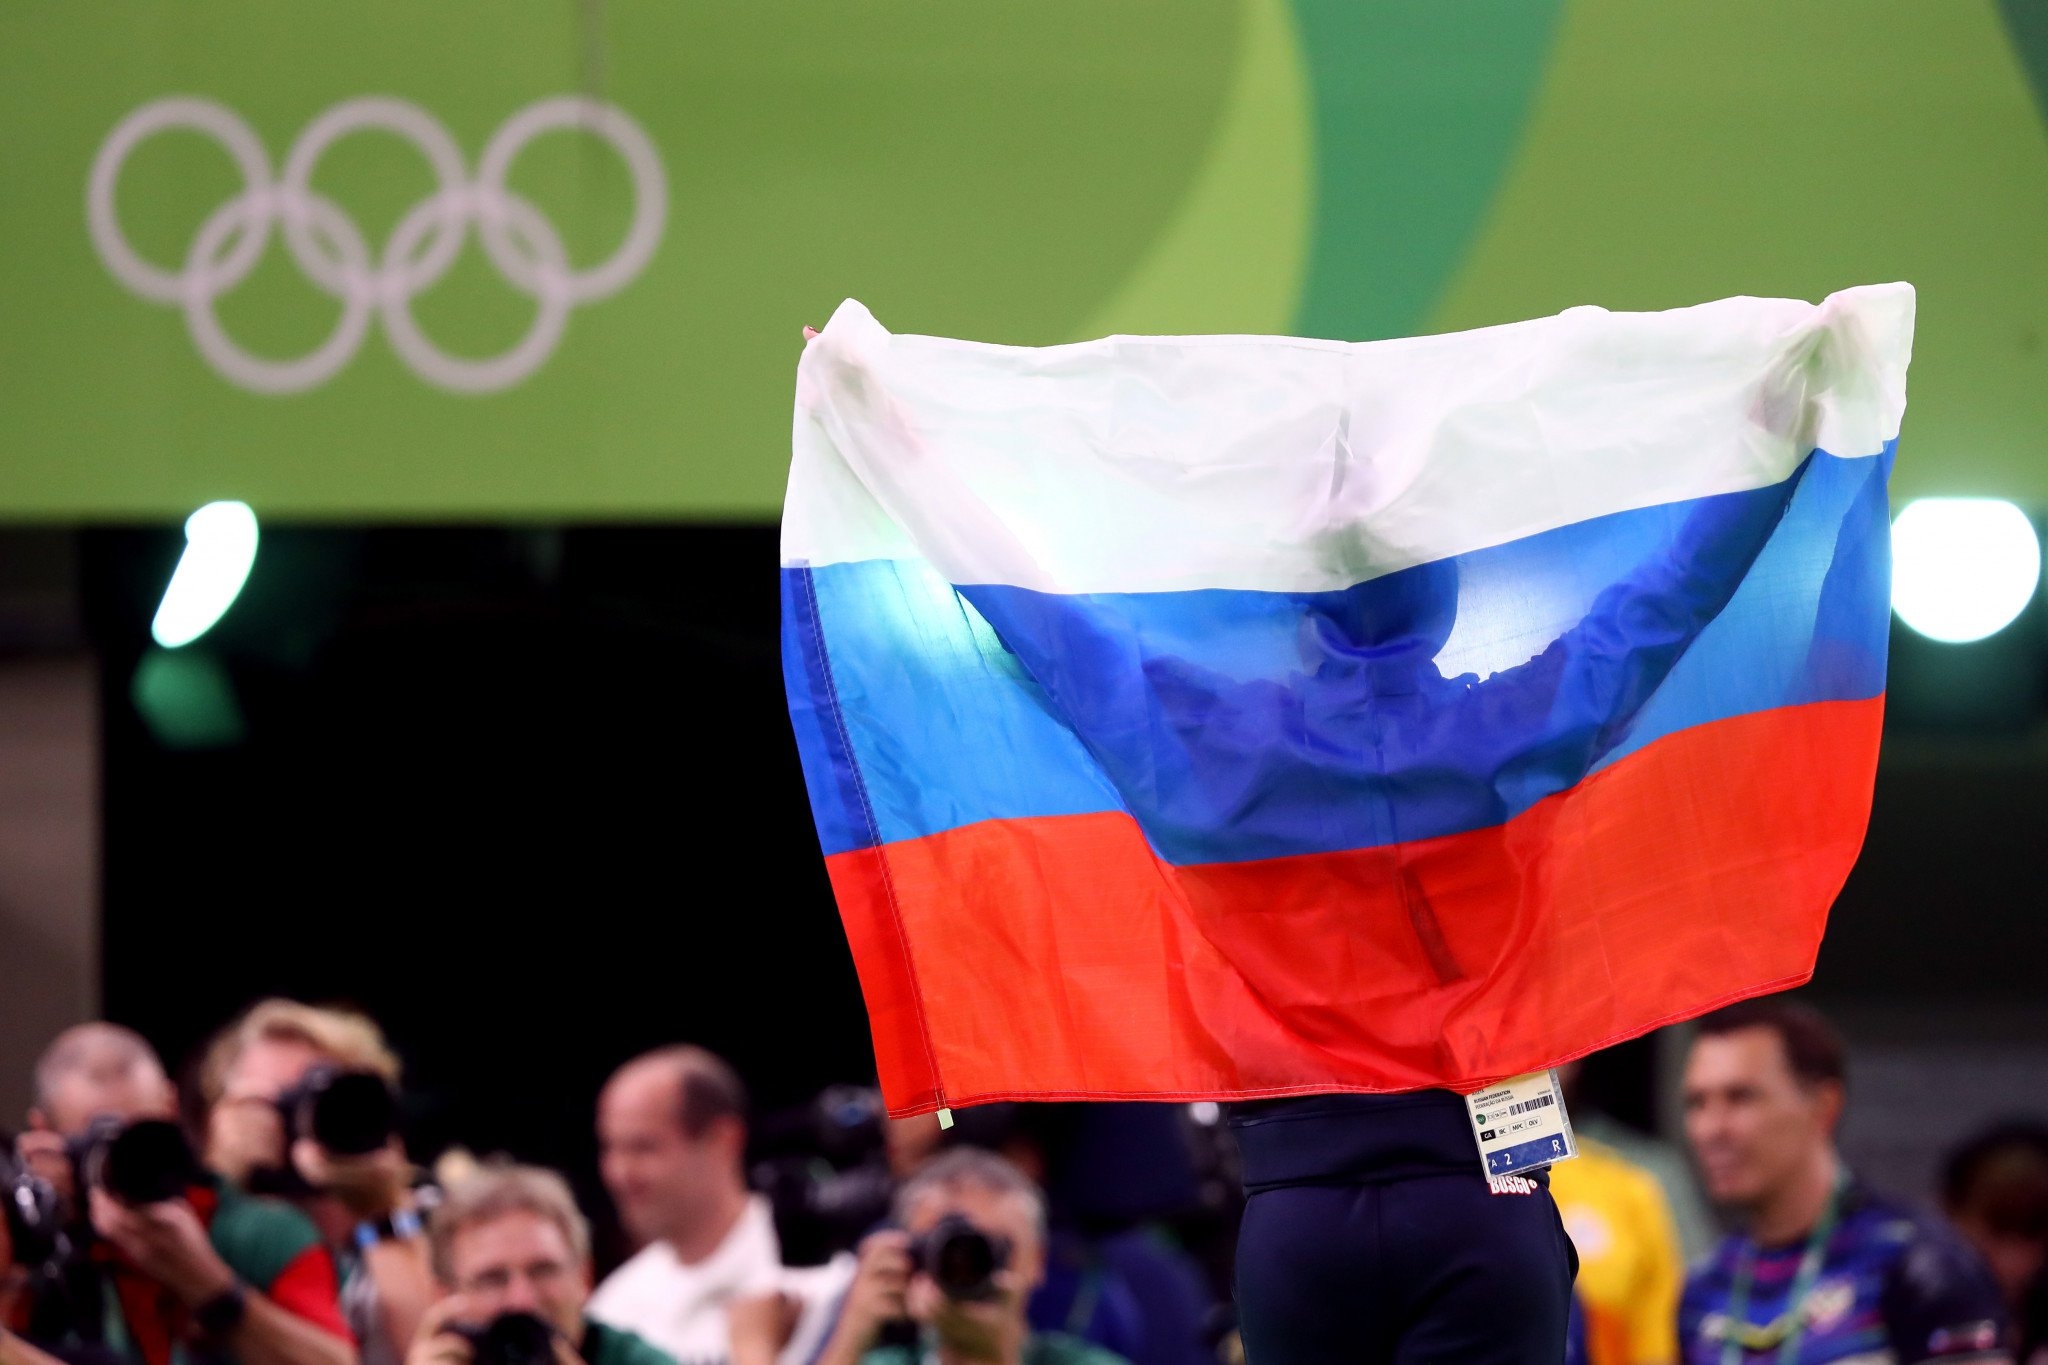 Поредни случаи с употреба на допинг засегнаха руската атлетика Местната